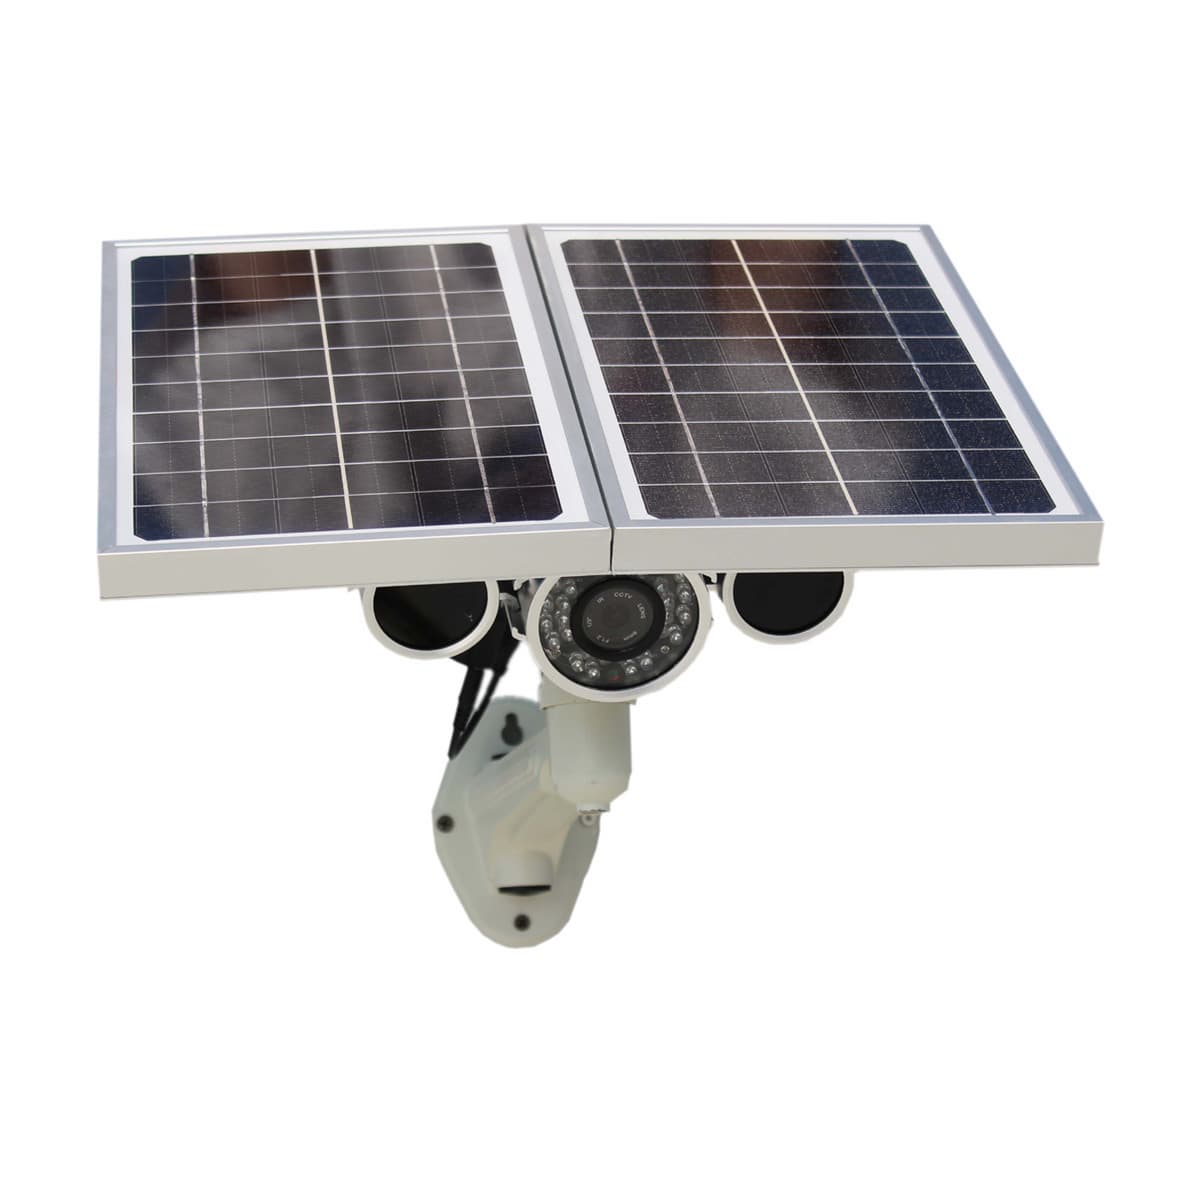 Wanscam HW0029 Solar Power Bullet IP Camera Built-in SD Card